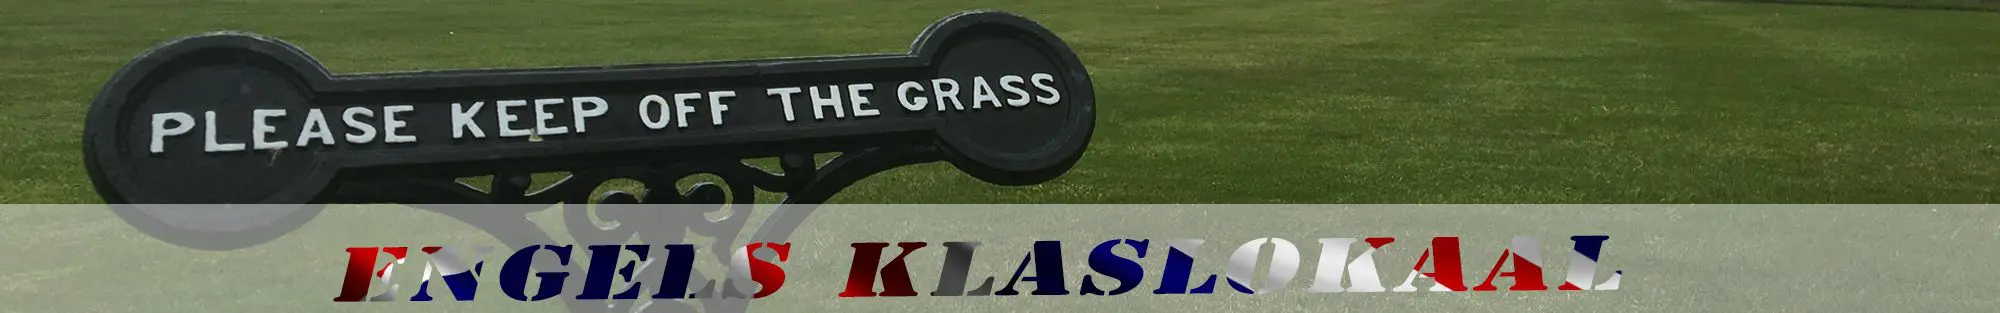 please keep off the grass header engels klaslokaal